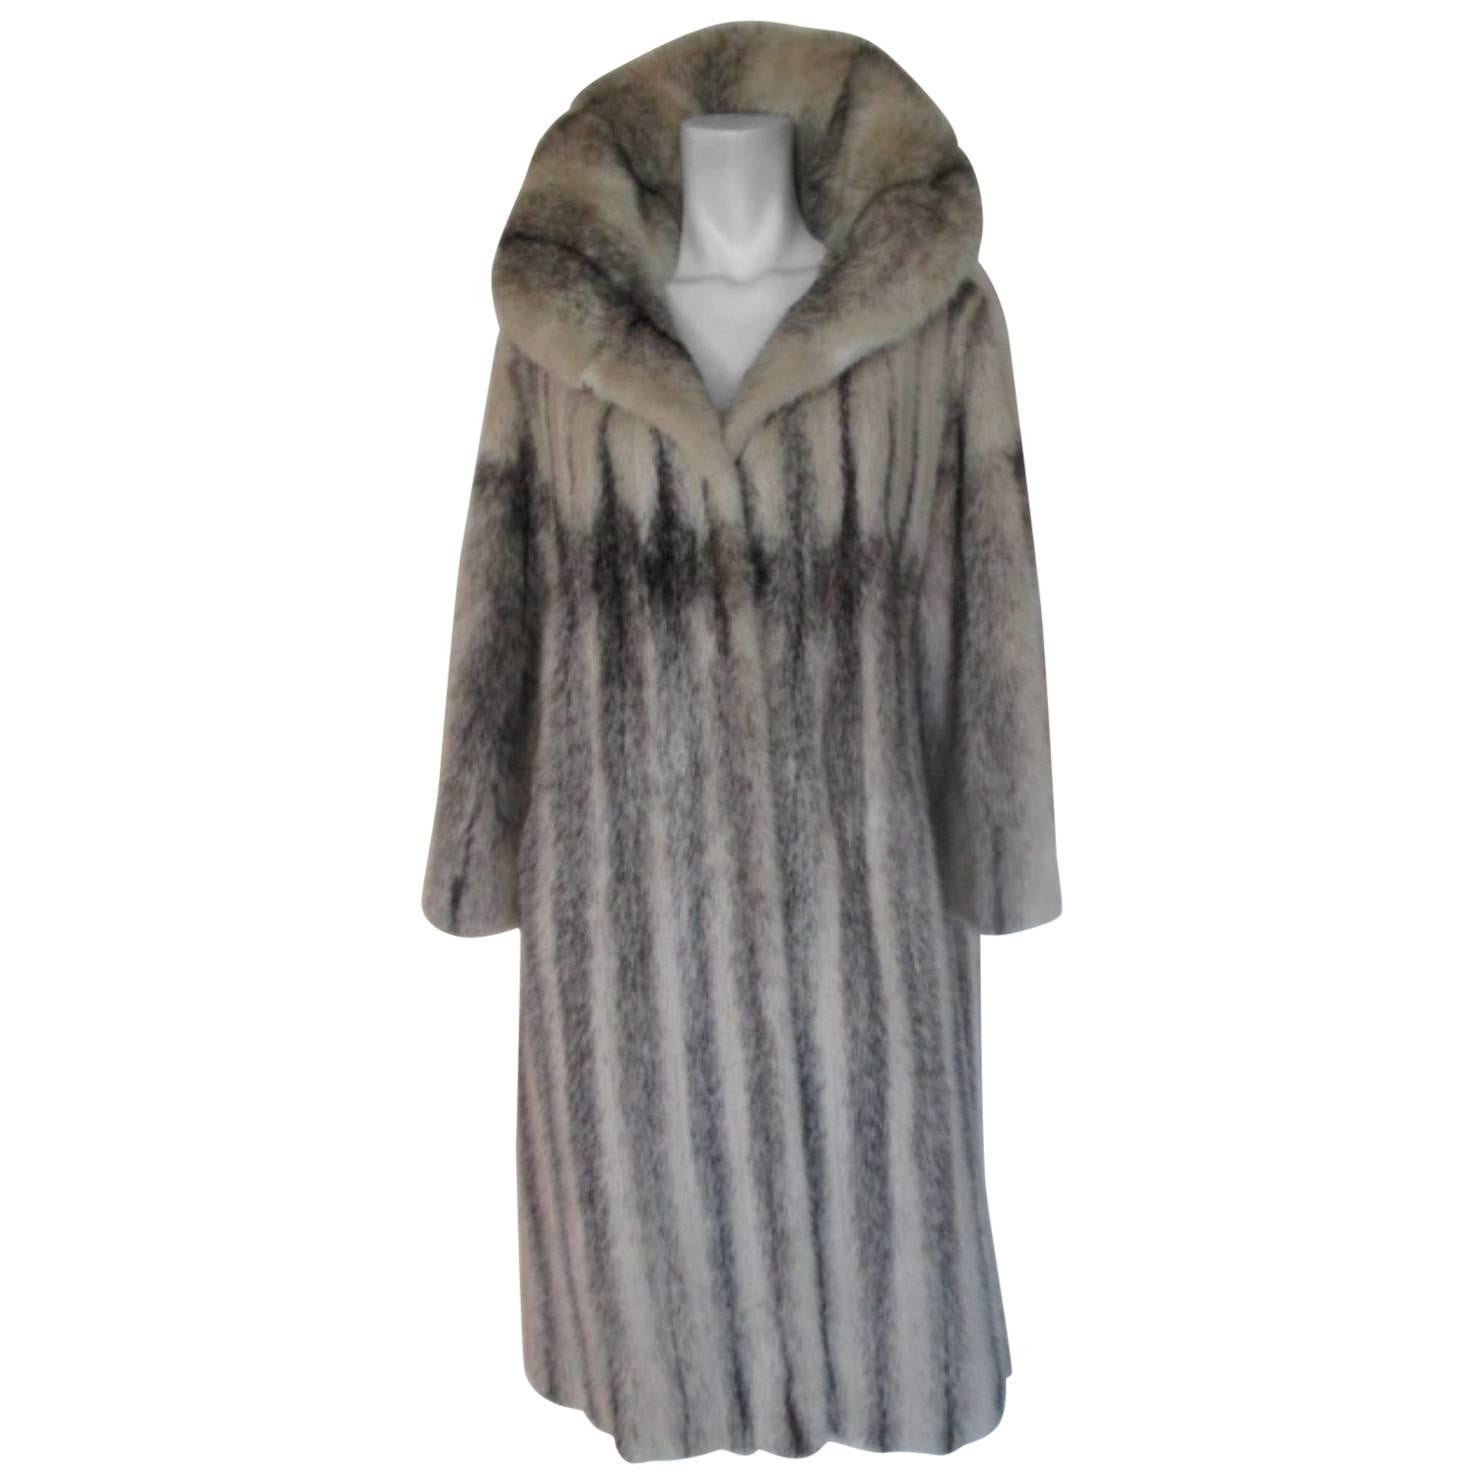   Kohinoor Cross Mink Fur Coat